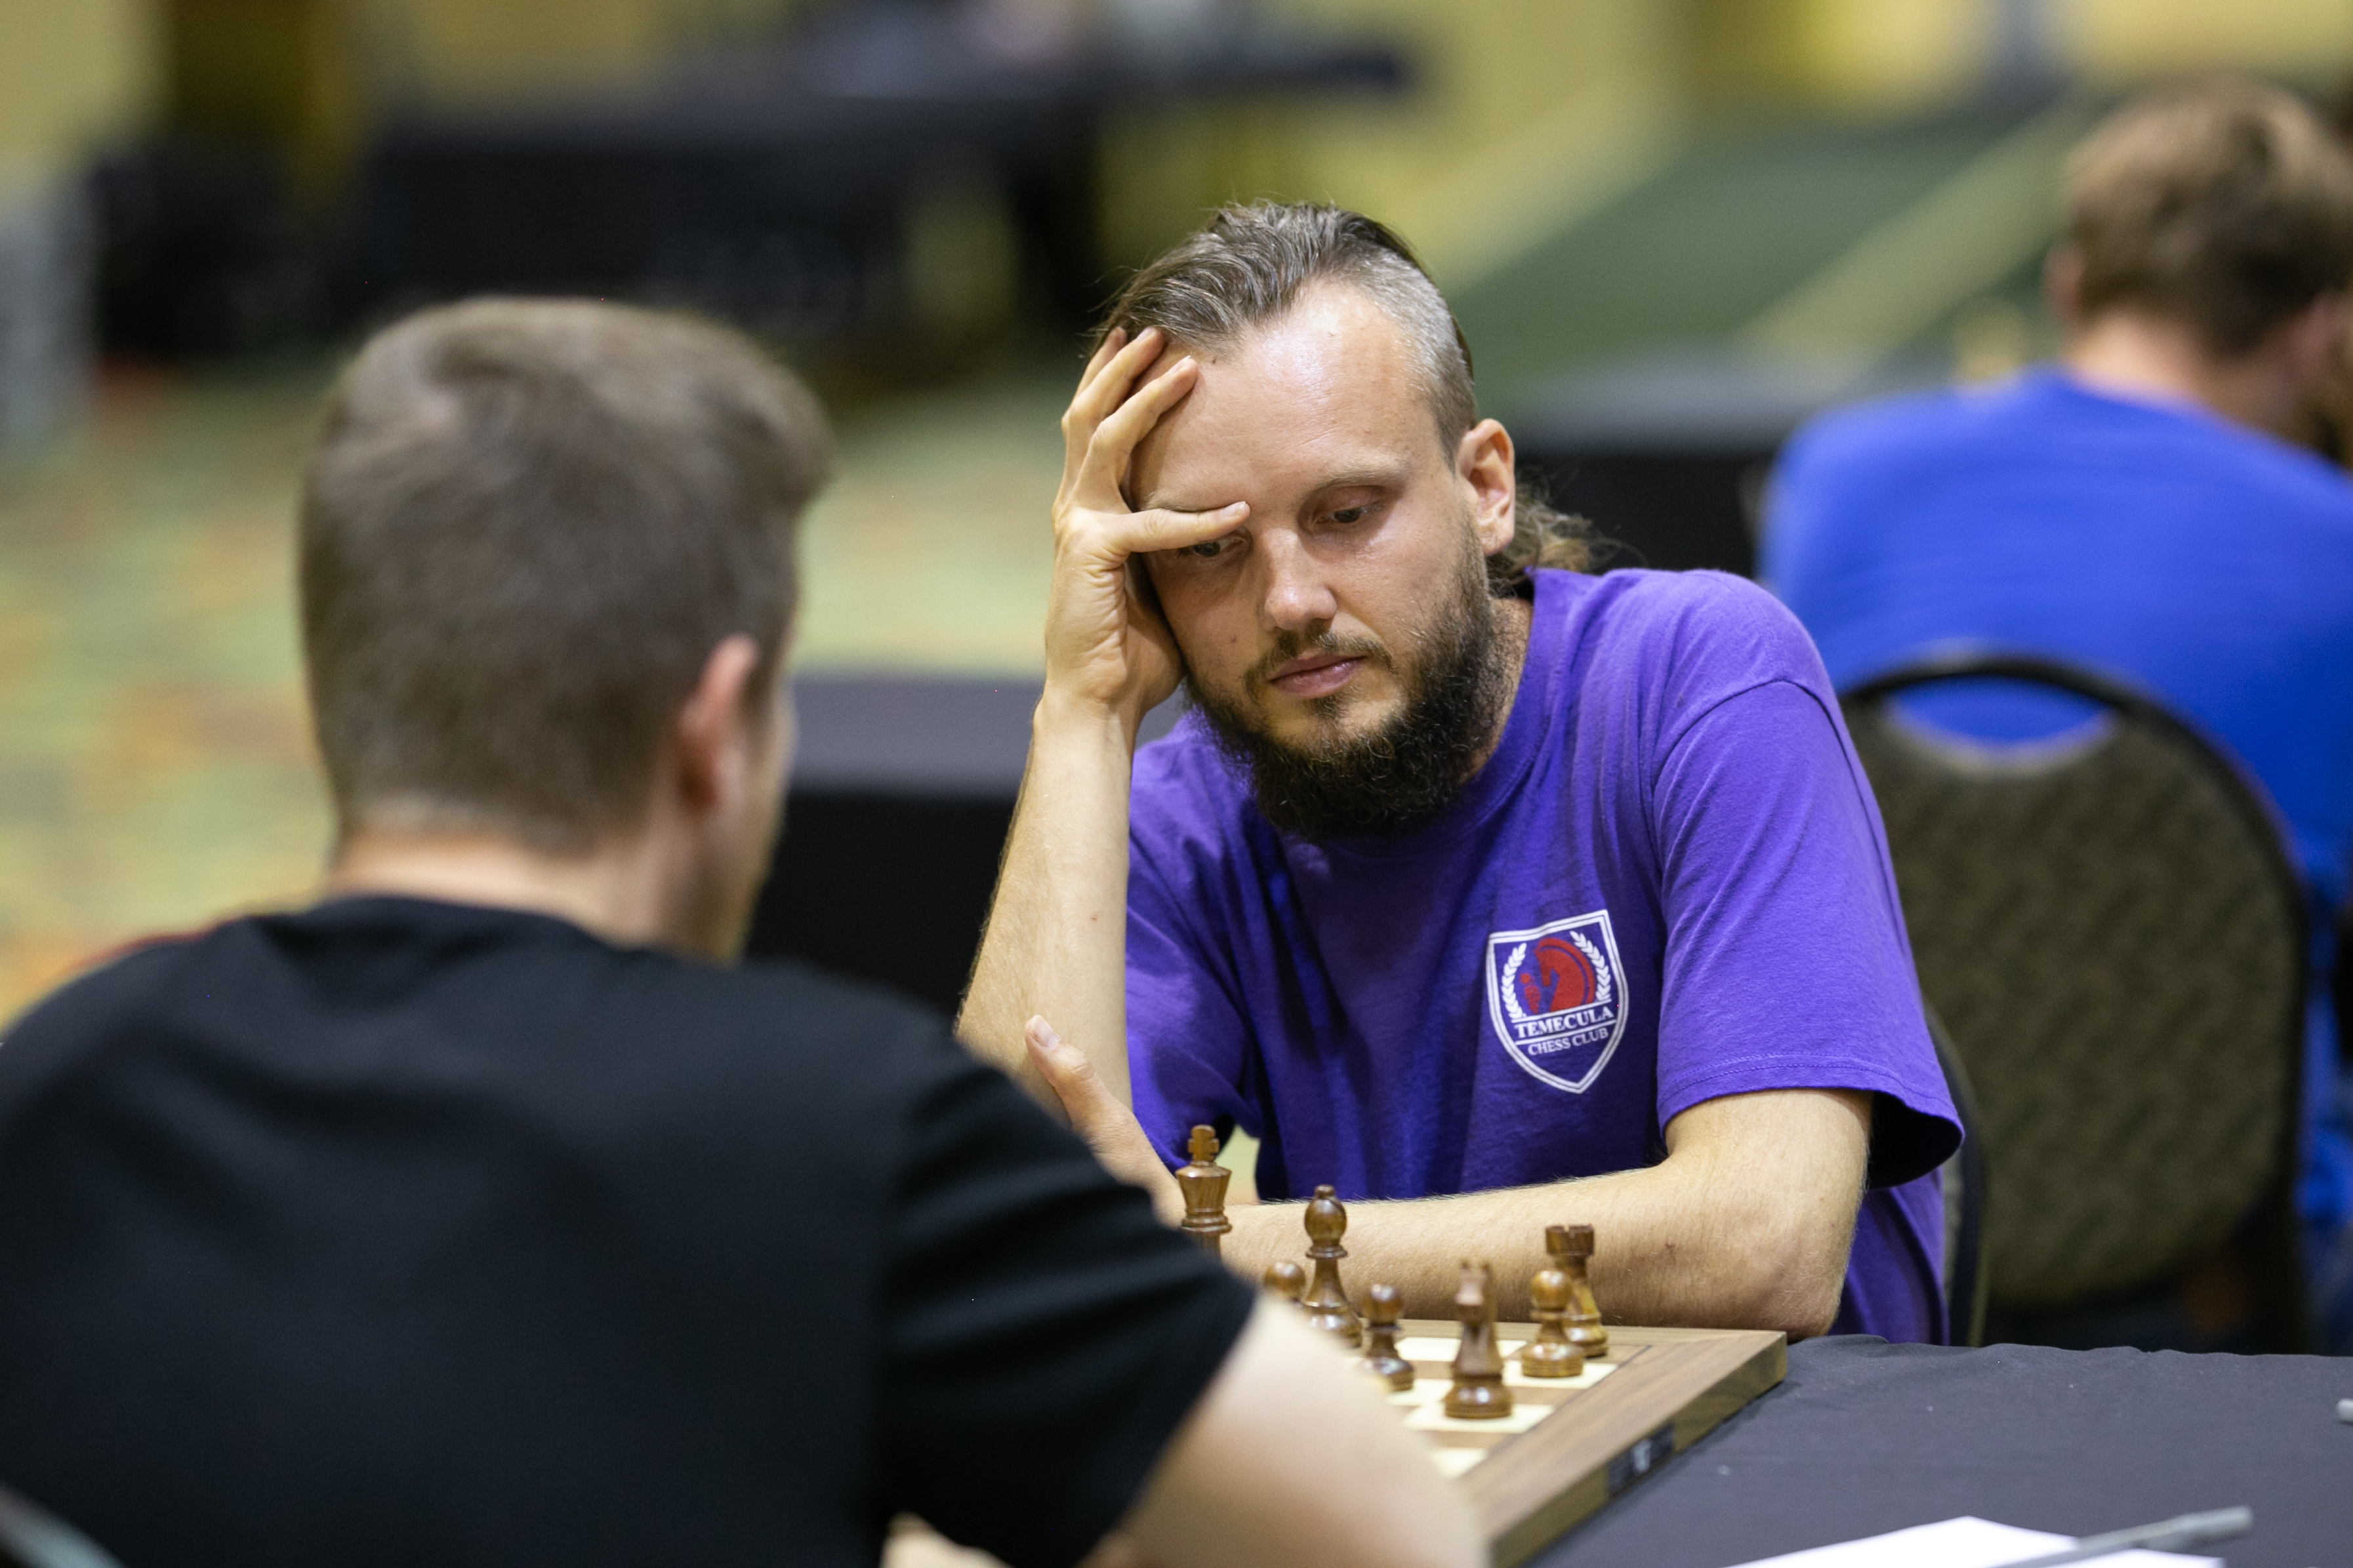 Grabinsky brings home top US score in chess meet, News